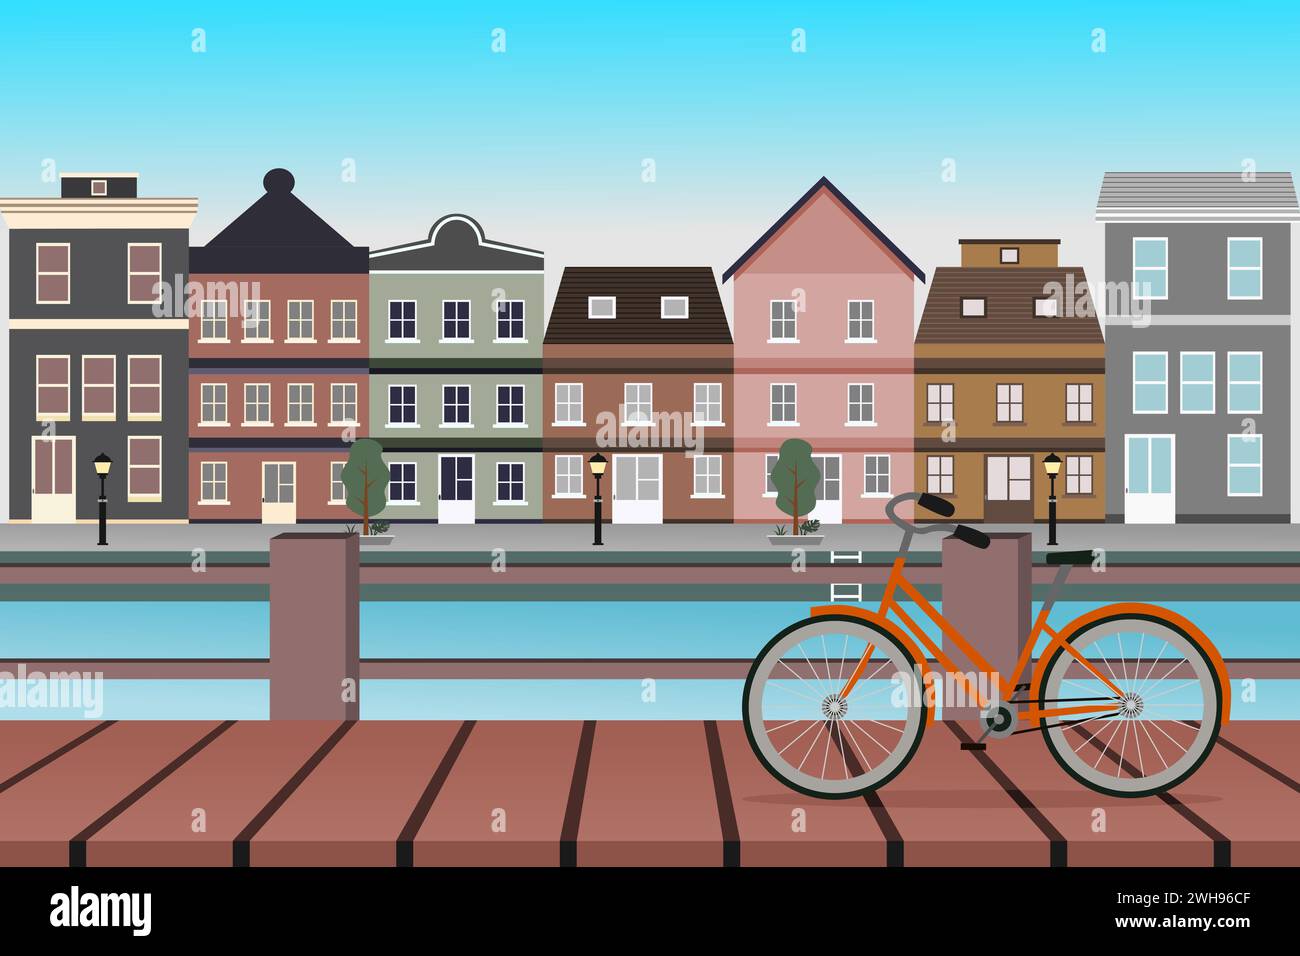 Amsterdams Stadtbild mit alten Häusern, Wasserkanälen, Brücke und Fahrrädern. Vektorabbildung. Stock Vektor